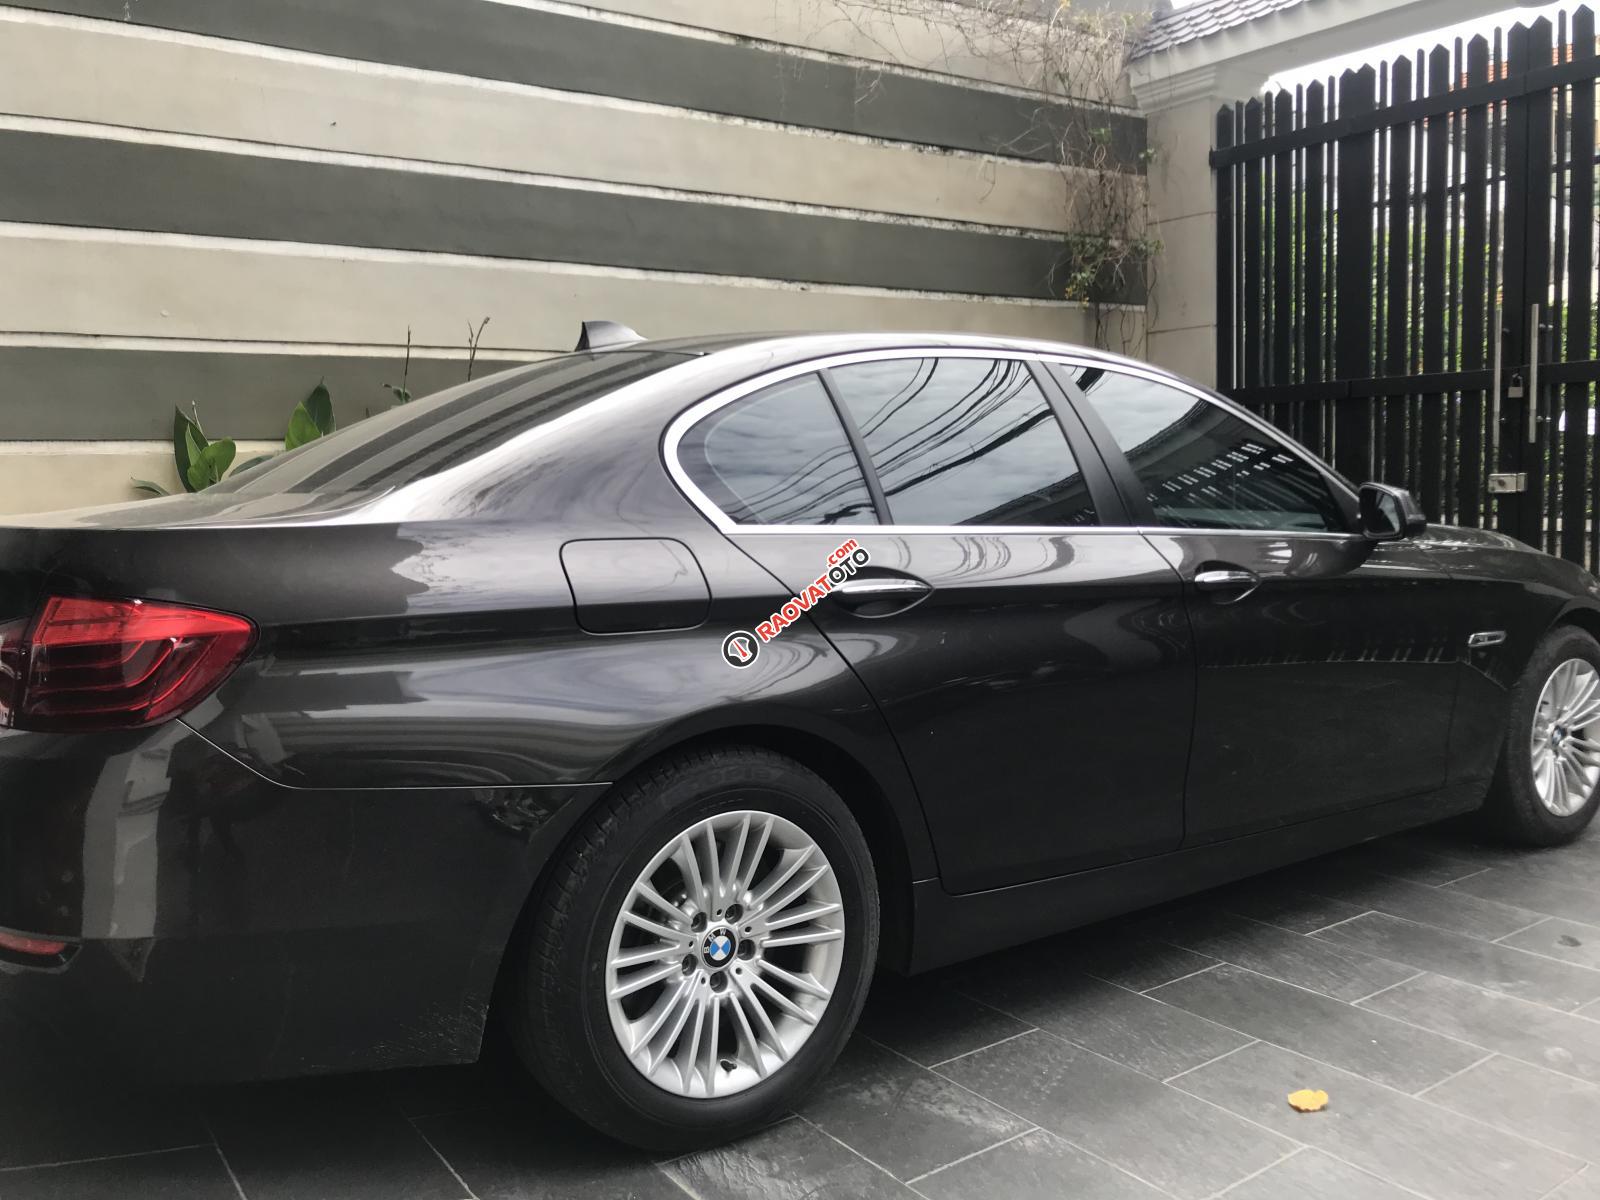 Bán BMW 520i 2015, xe đẹp đi 31.000miles, chất lượng xe không lỗi bao kiểm tra tại hãng-4